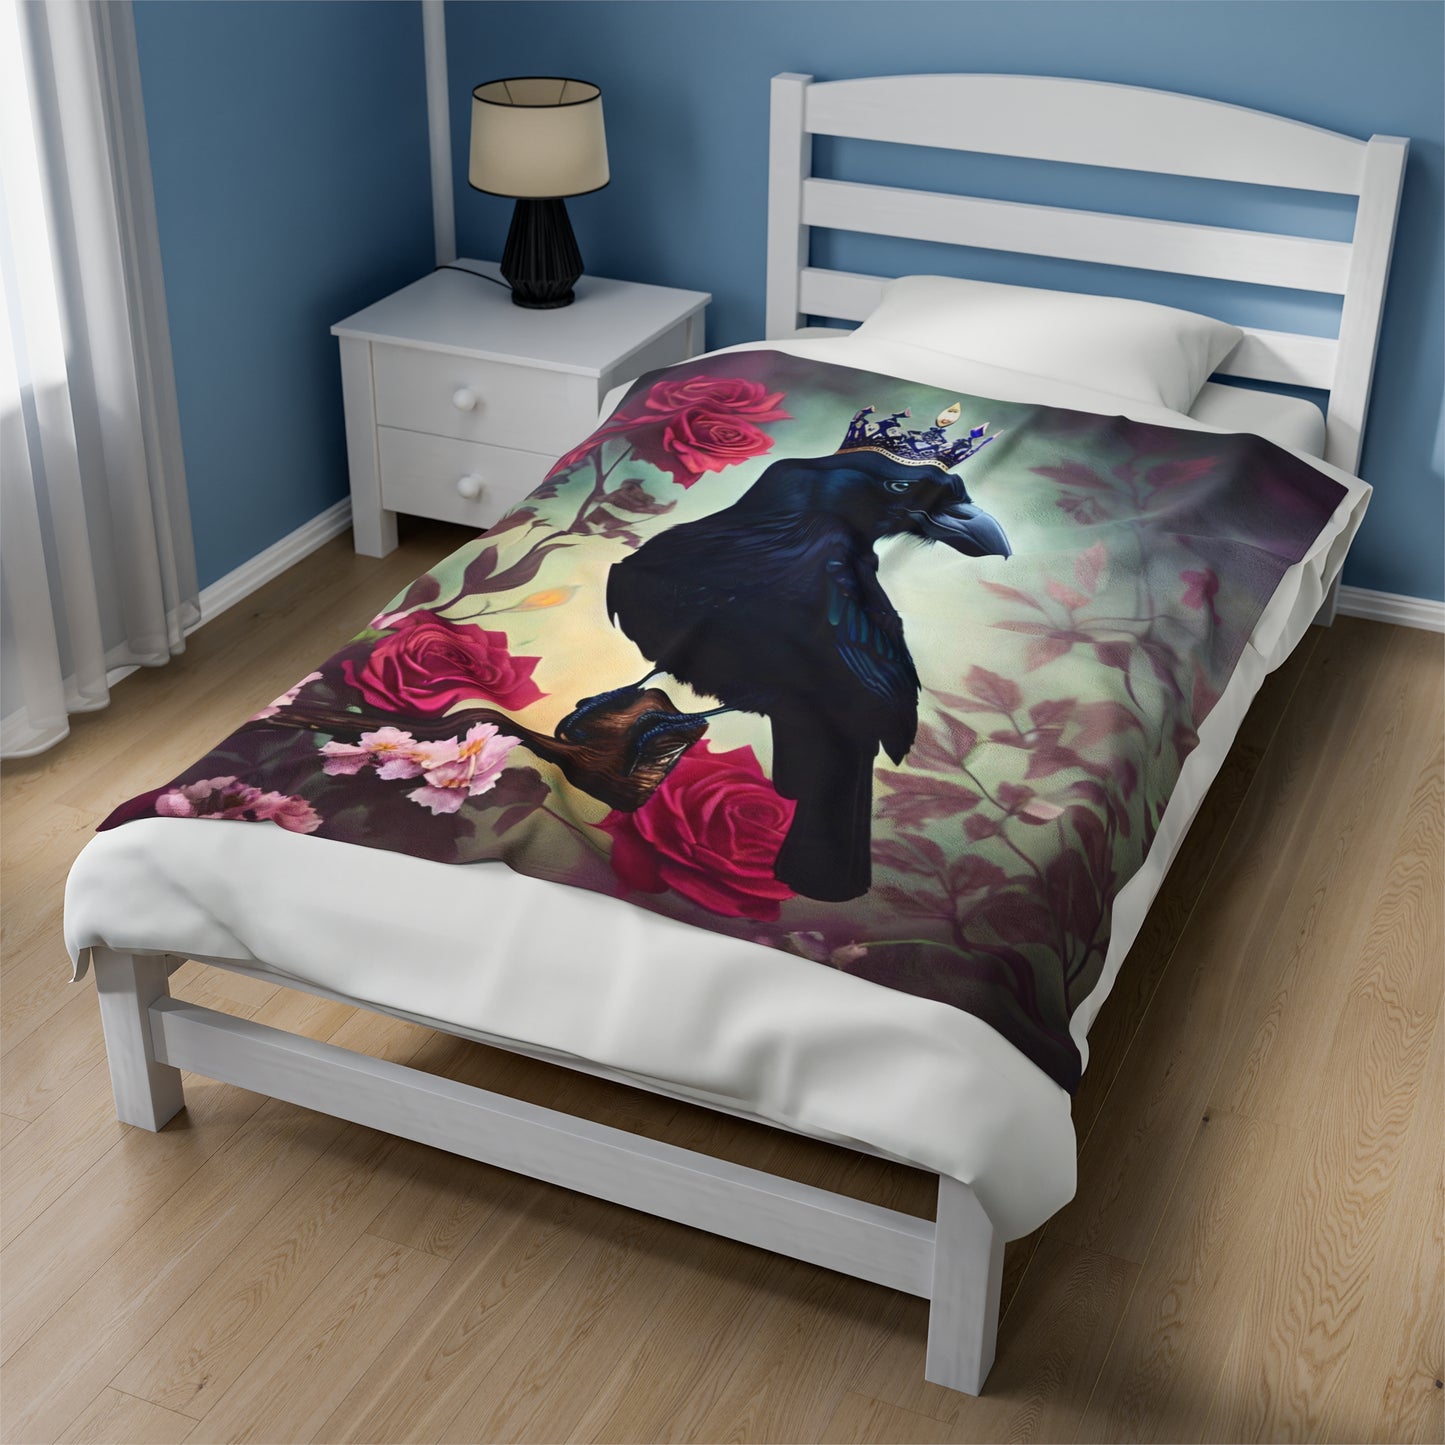 Crow and Roses Velveteen Plush Blanket